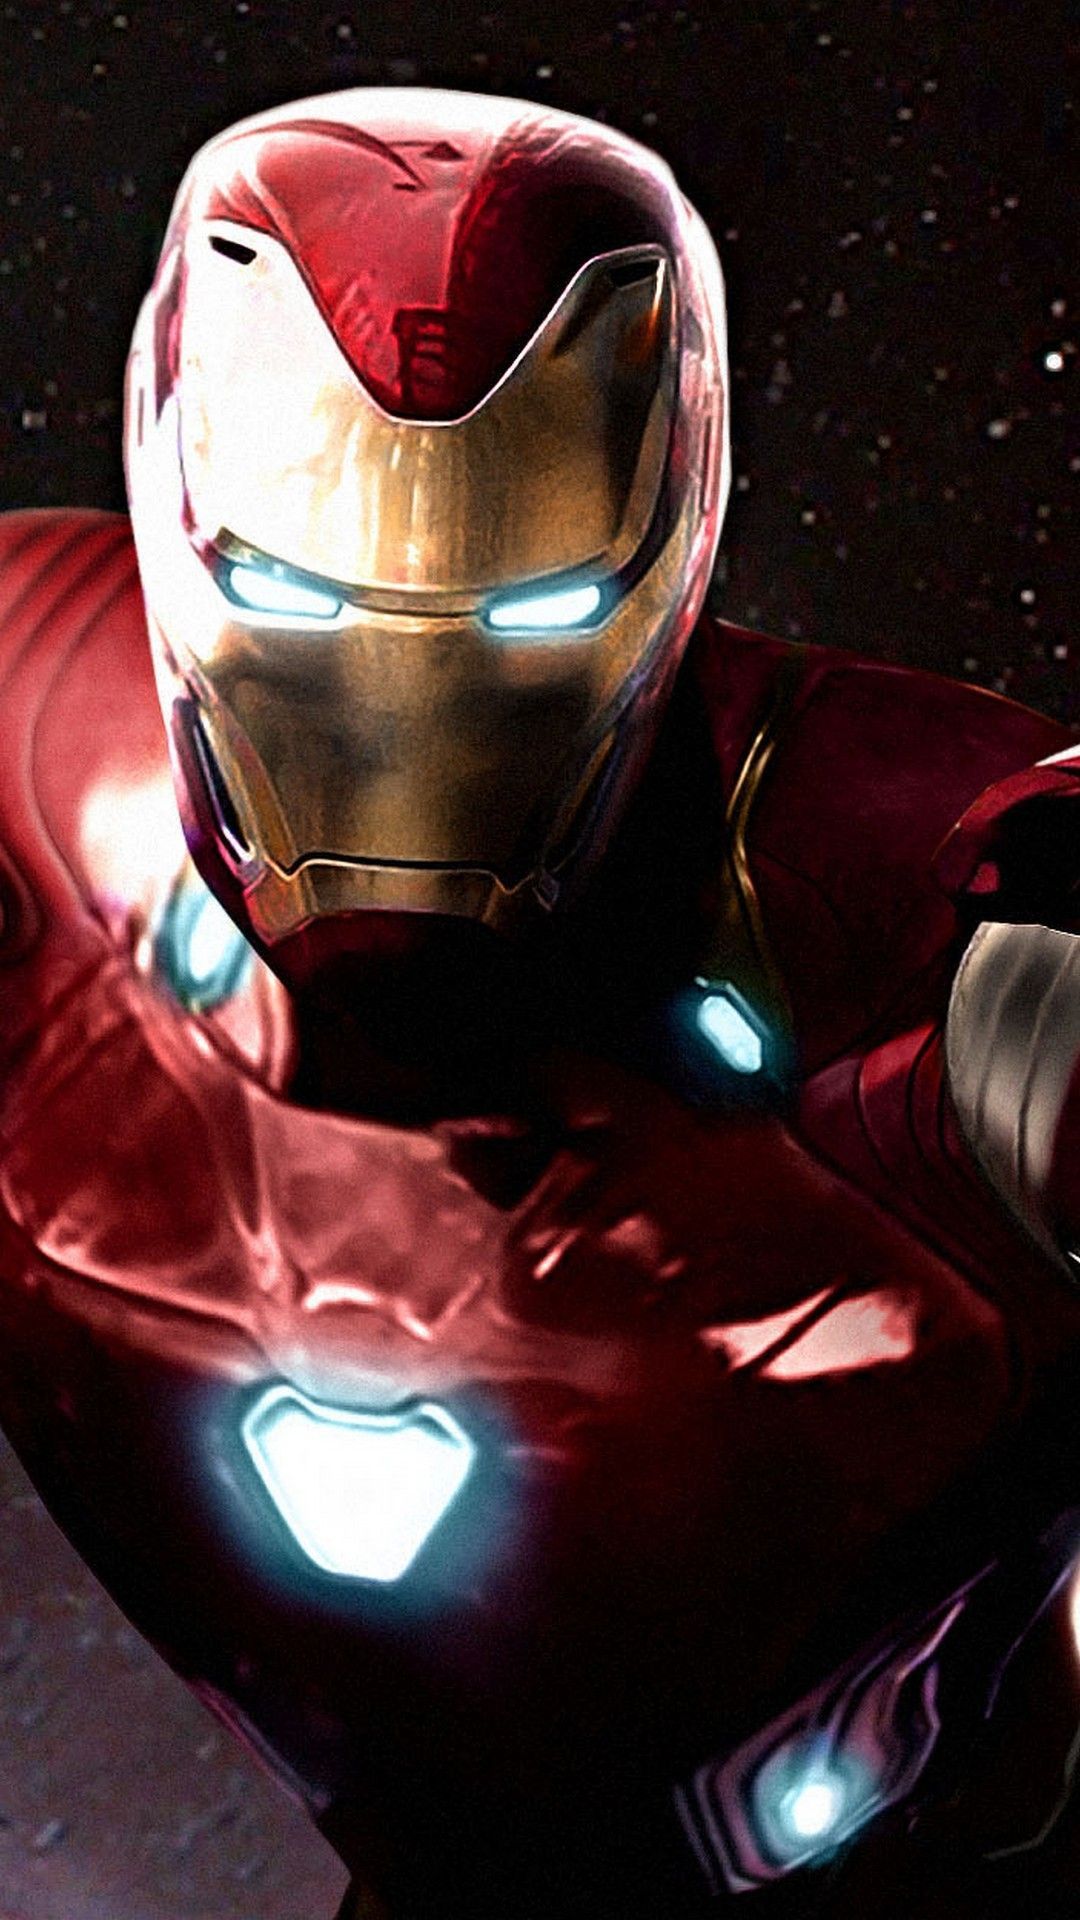 Iron Man Avengers Infinity War iPhone Wallpaper Man